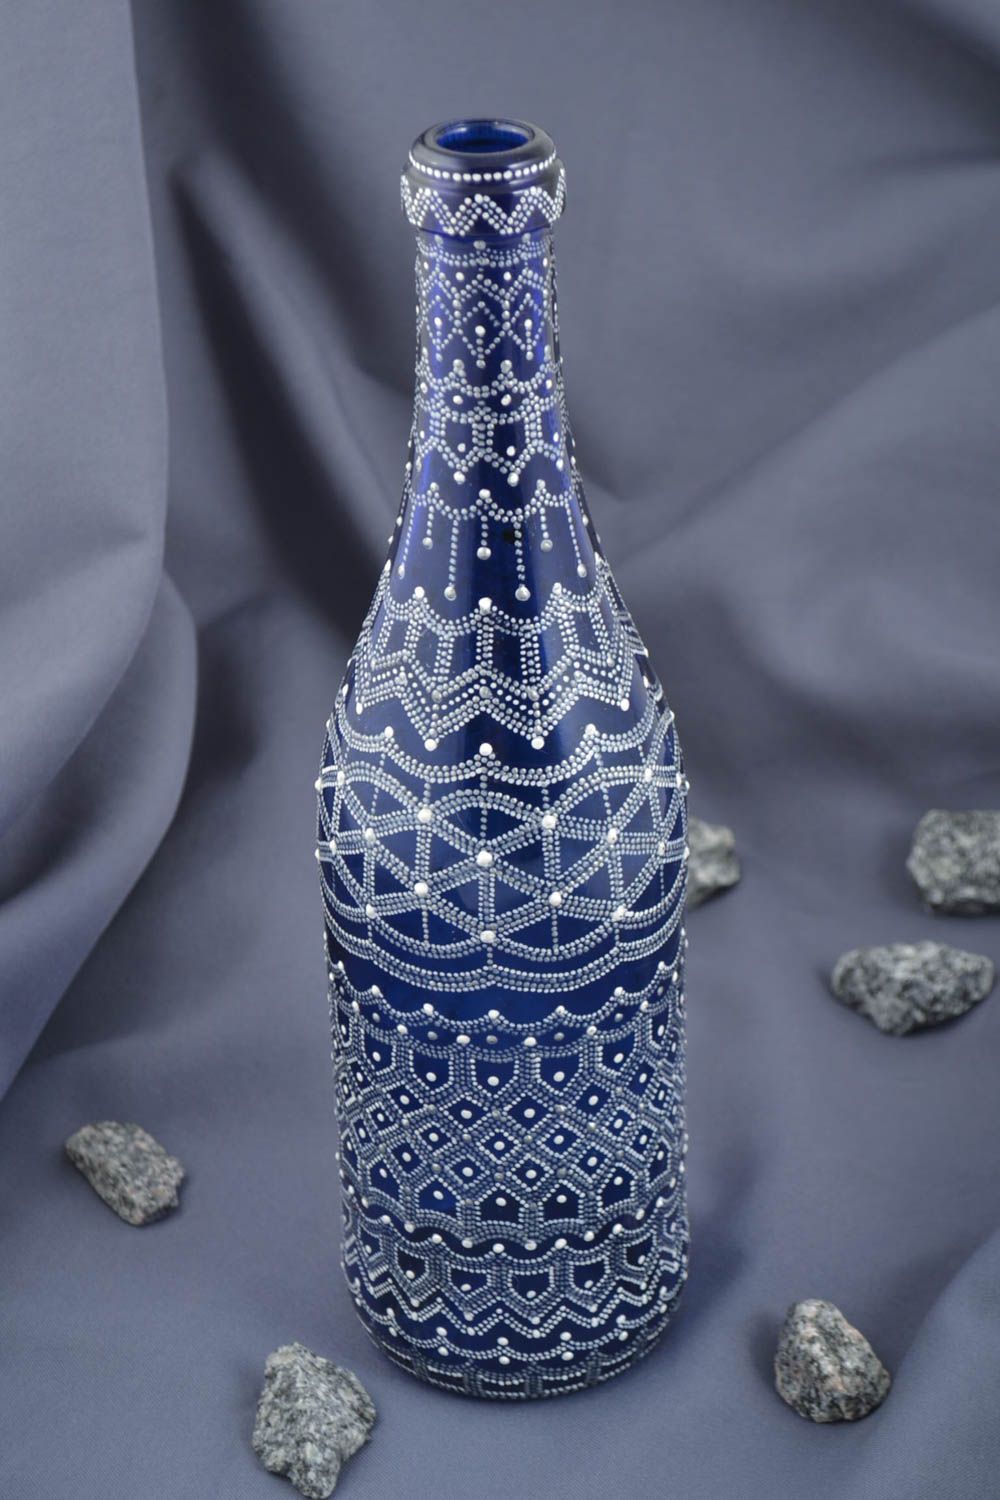 Бутылка стеклянная посуда ручной работы бутылка с росписью оригинальная фото 1